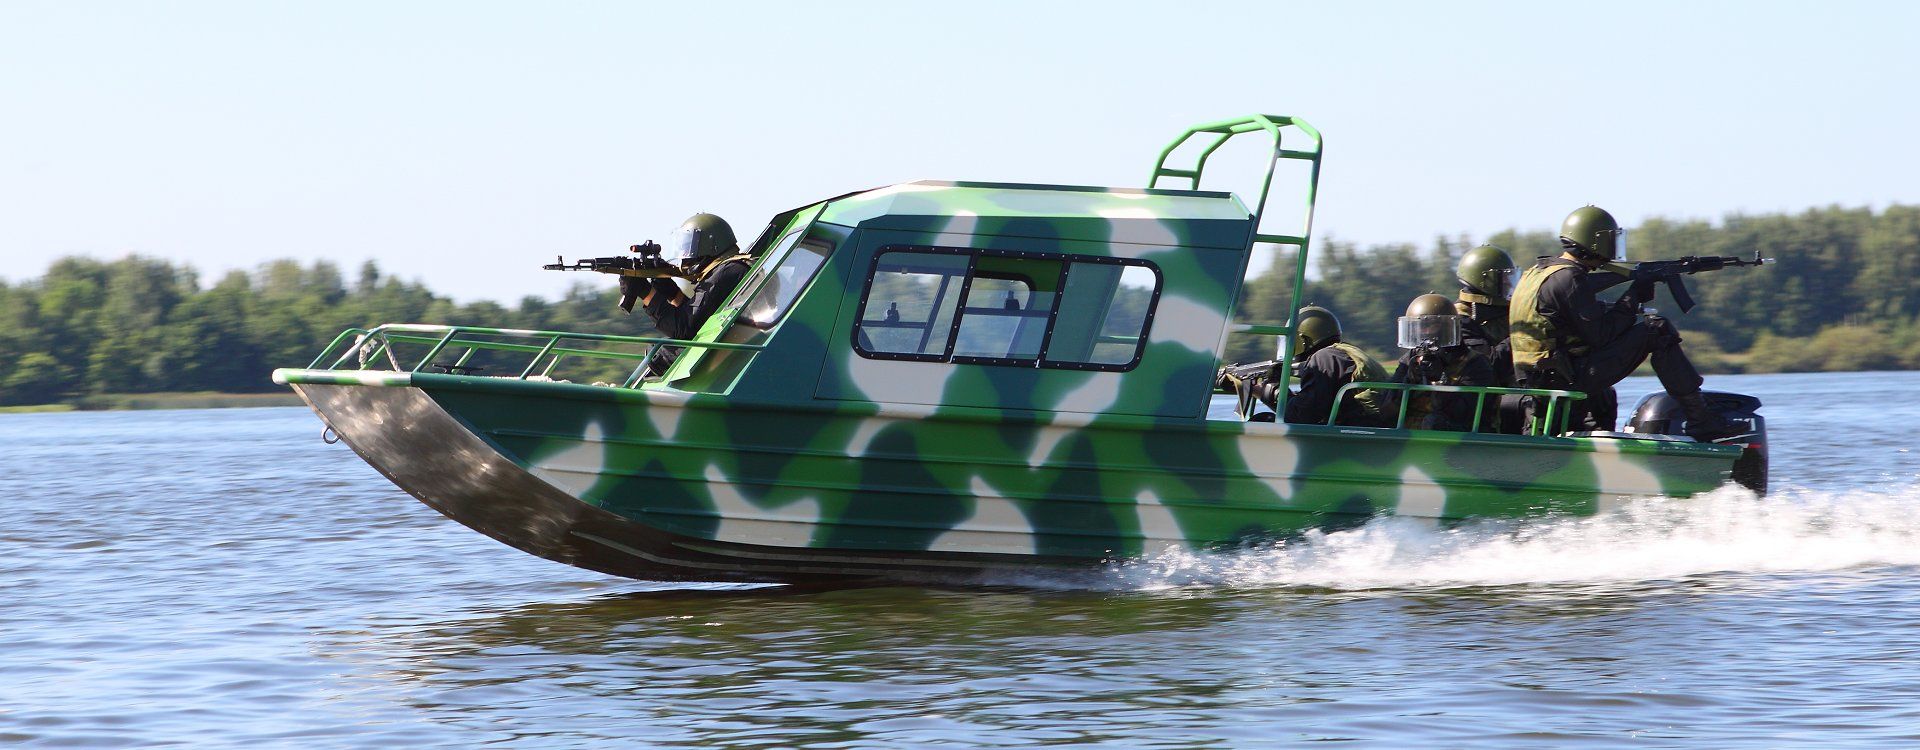 Моторная лодка КС-Фьорд 62 Рубочный  - фото 1